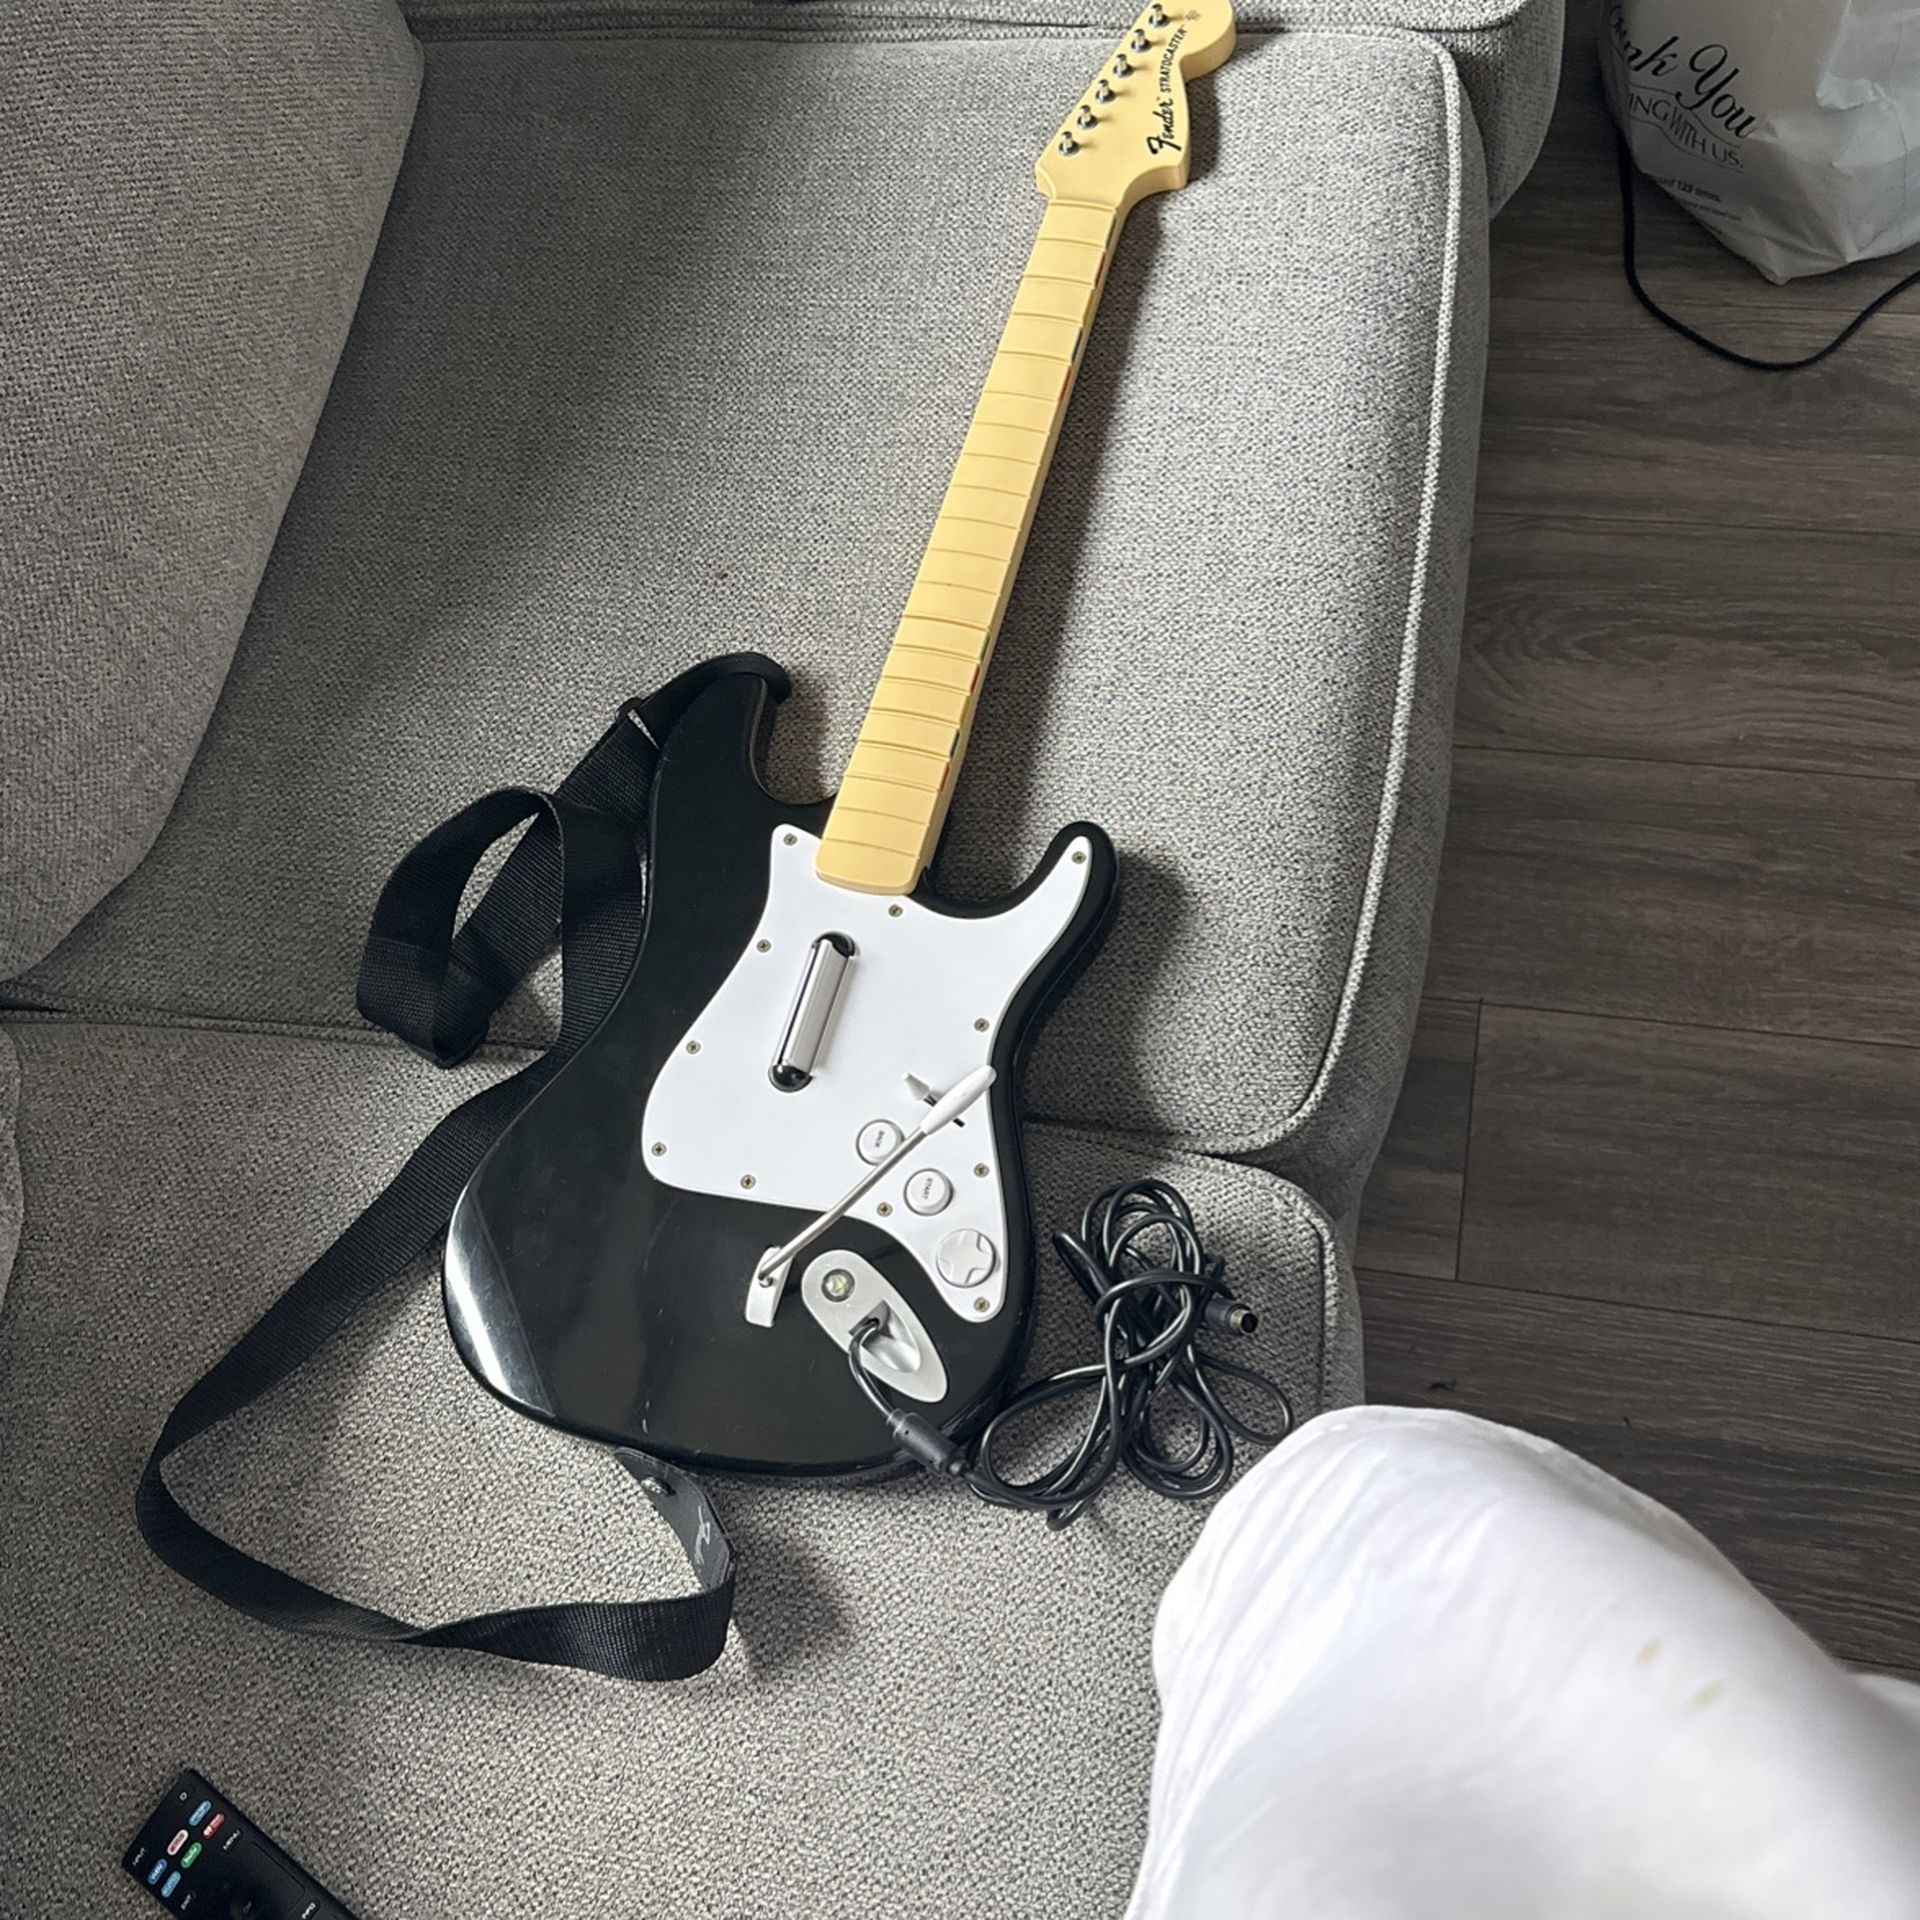 Guitar Hero Fender Guitar Xbox 